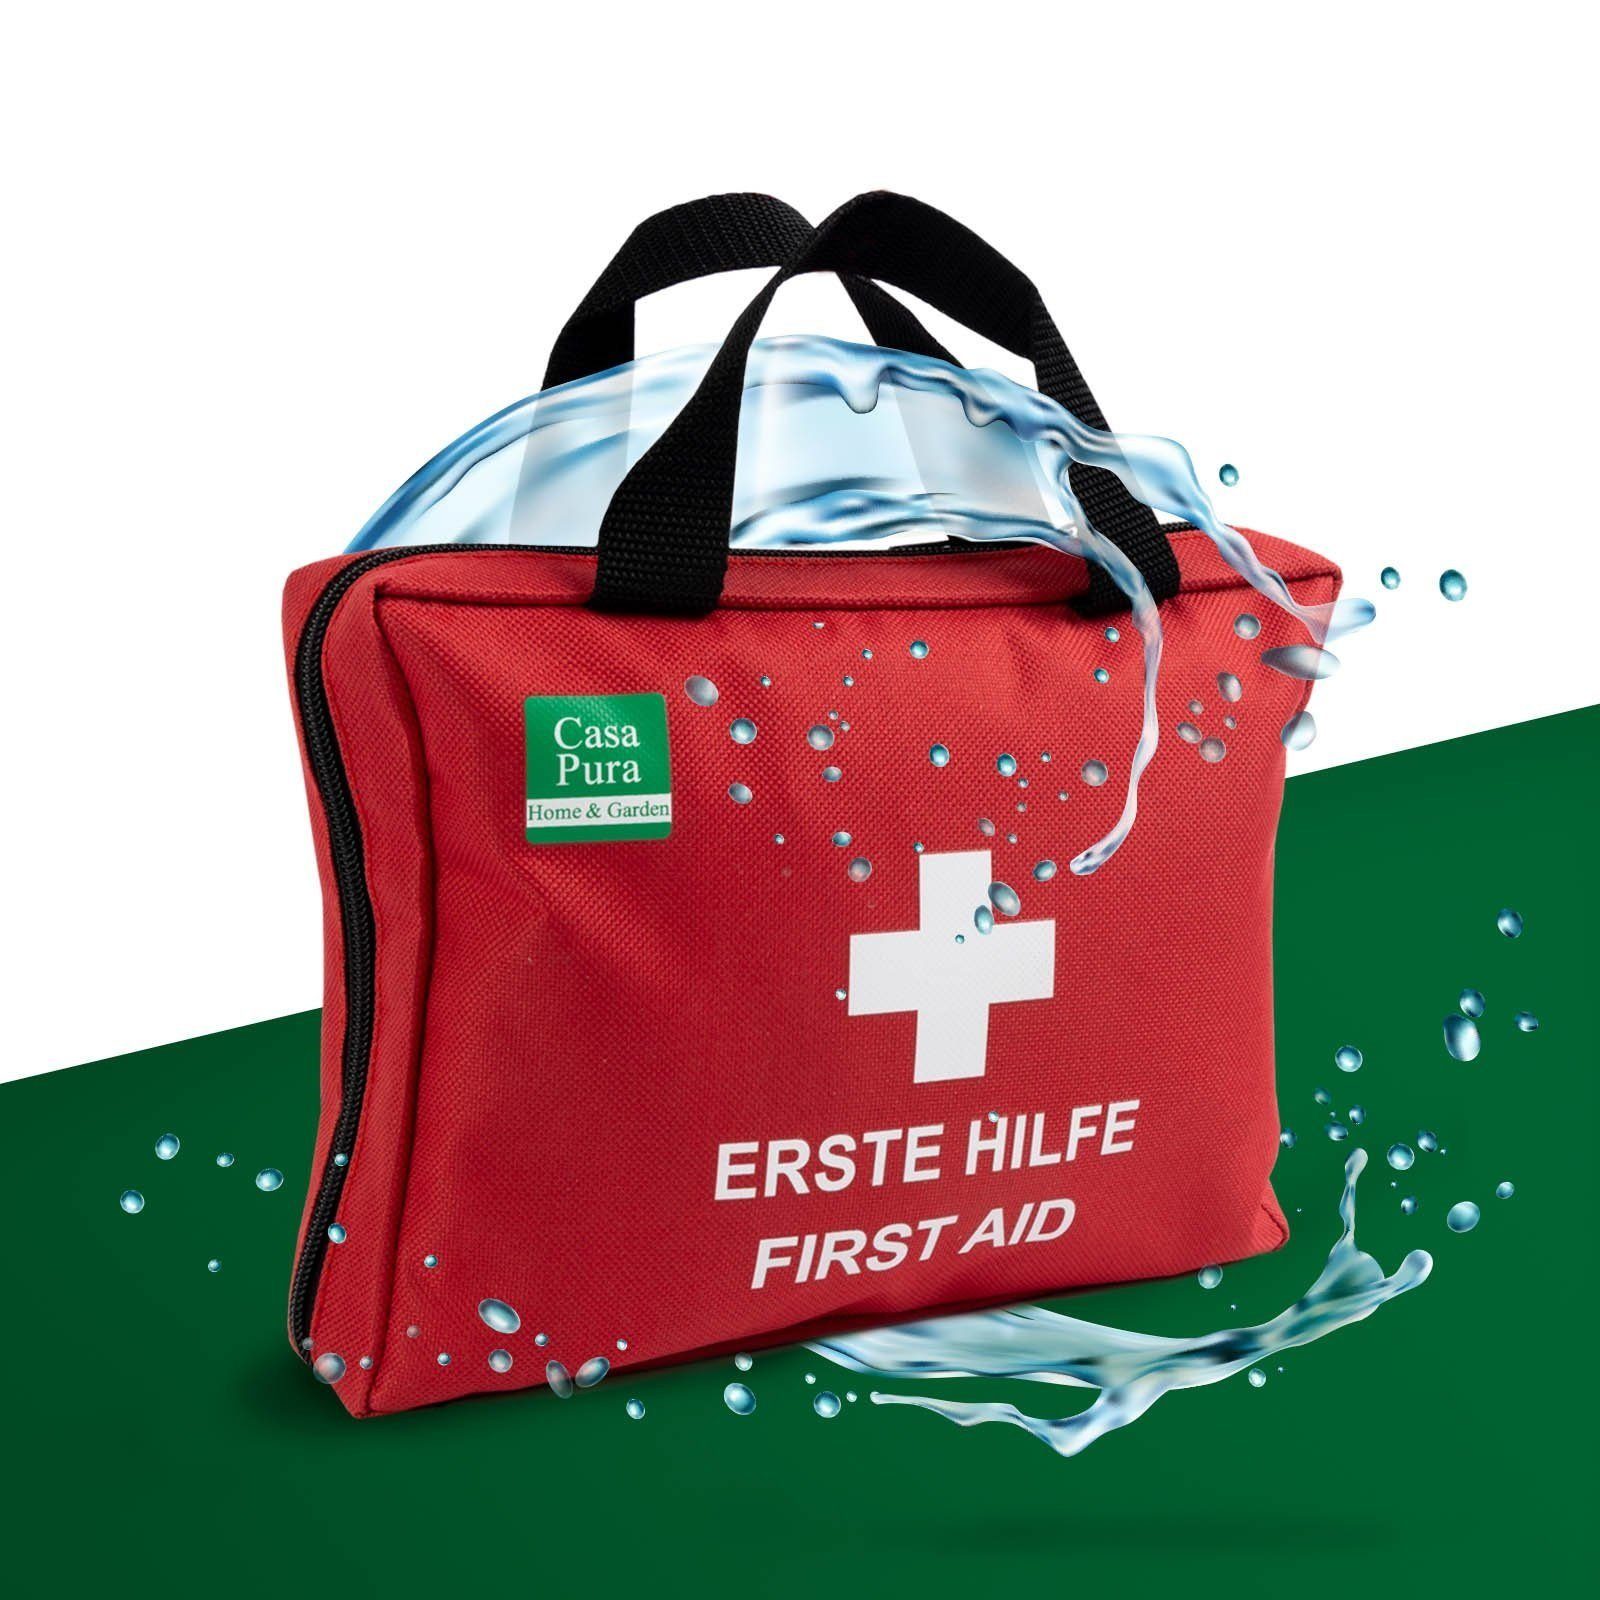 MNT10 Erste-Hilfe-Set Notfall Erste-Hilfe-Set Outdoor, DIN 13167, Mini  First Aid Kit, Mini Erste Hilfe Set für Kinder, Fahrrad, Wandern